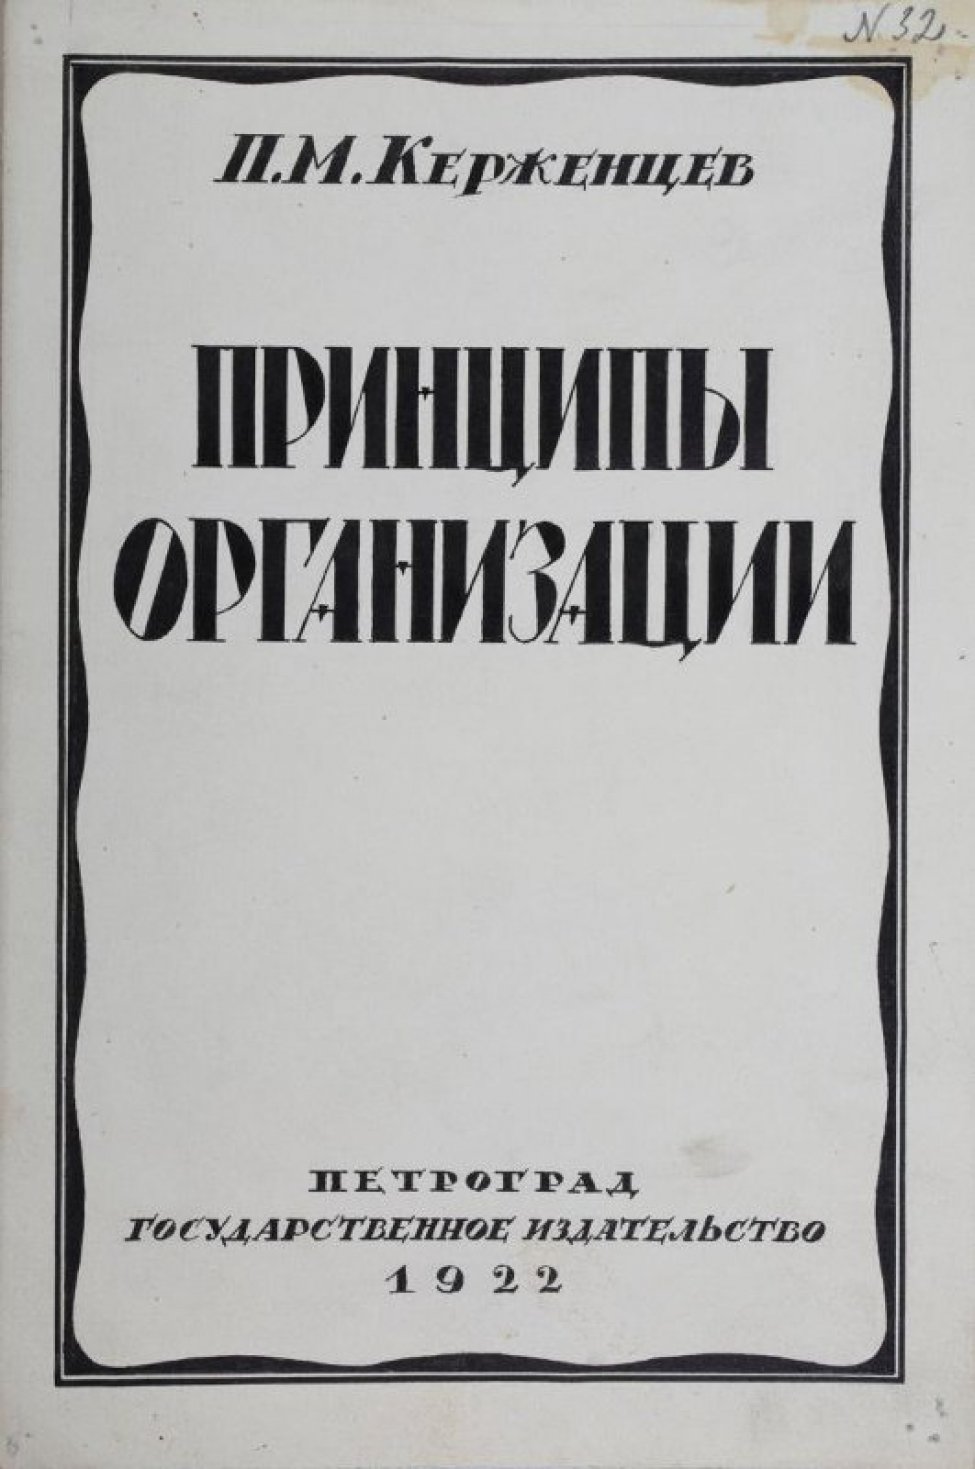 Изображена волнистая рамка, в которой печатным шрифтом написано:"П.М. Керженцев. Принципы организации" Внизу написано - "Петроград Государственное издательство 1922".